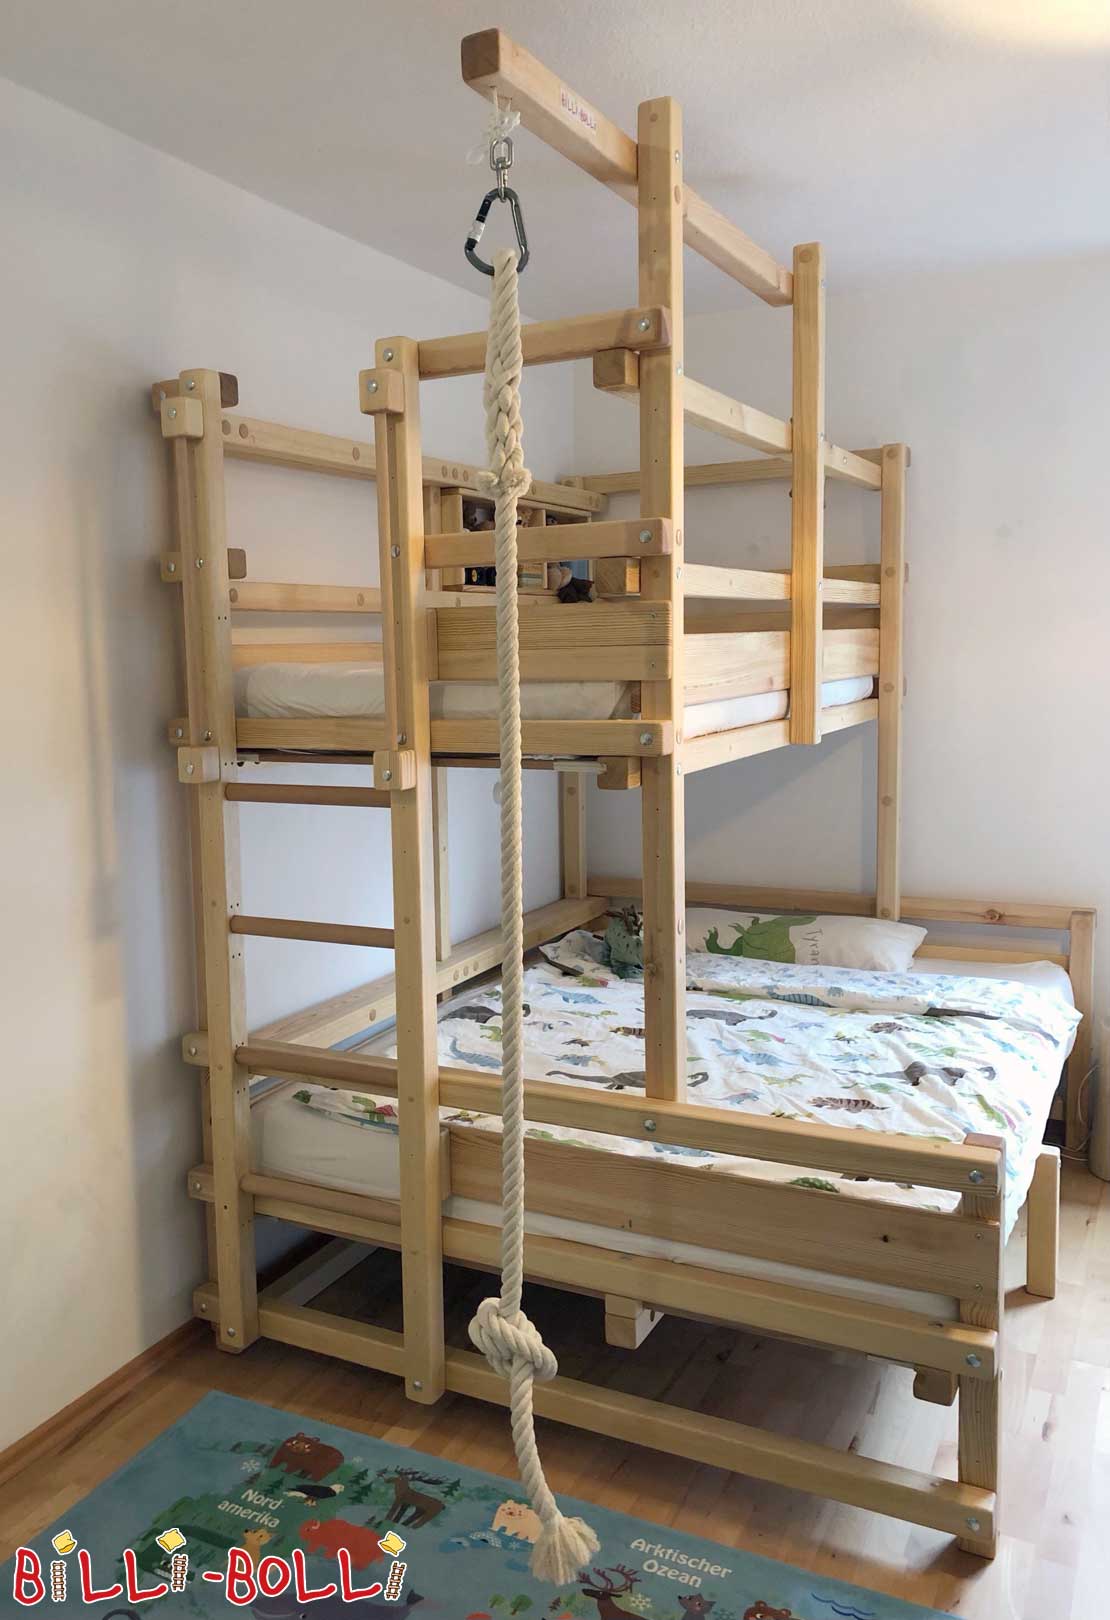 Двоярусне ліжко-знизу - спеціальне дитяче ліжко (Литячі ліжка)